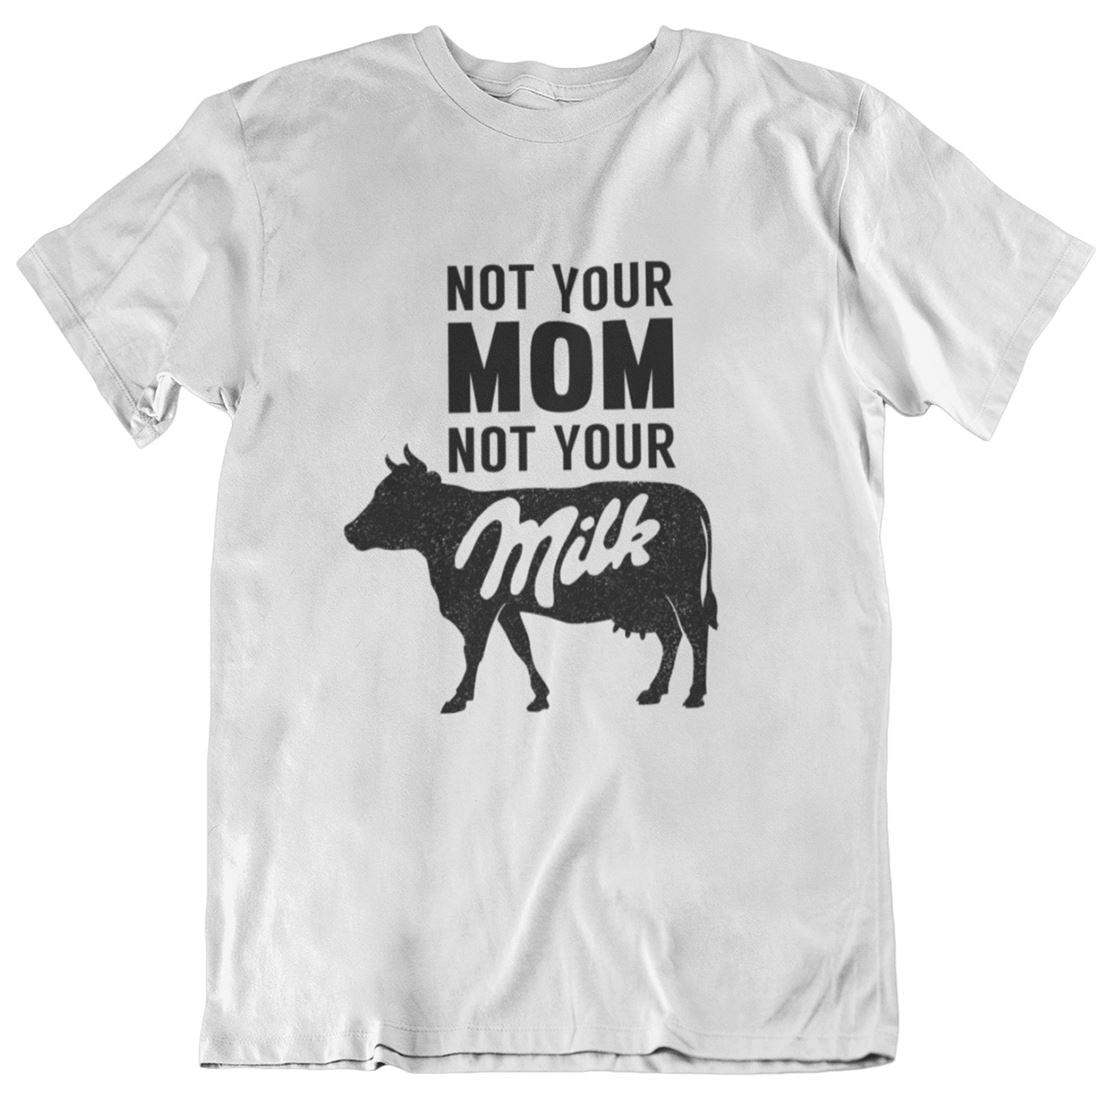 Not your mom not your milk - Unisex Organic Shirt Rocker T-Shirt ST/ST Shirtee Weiß S 